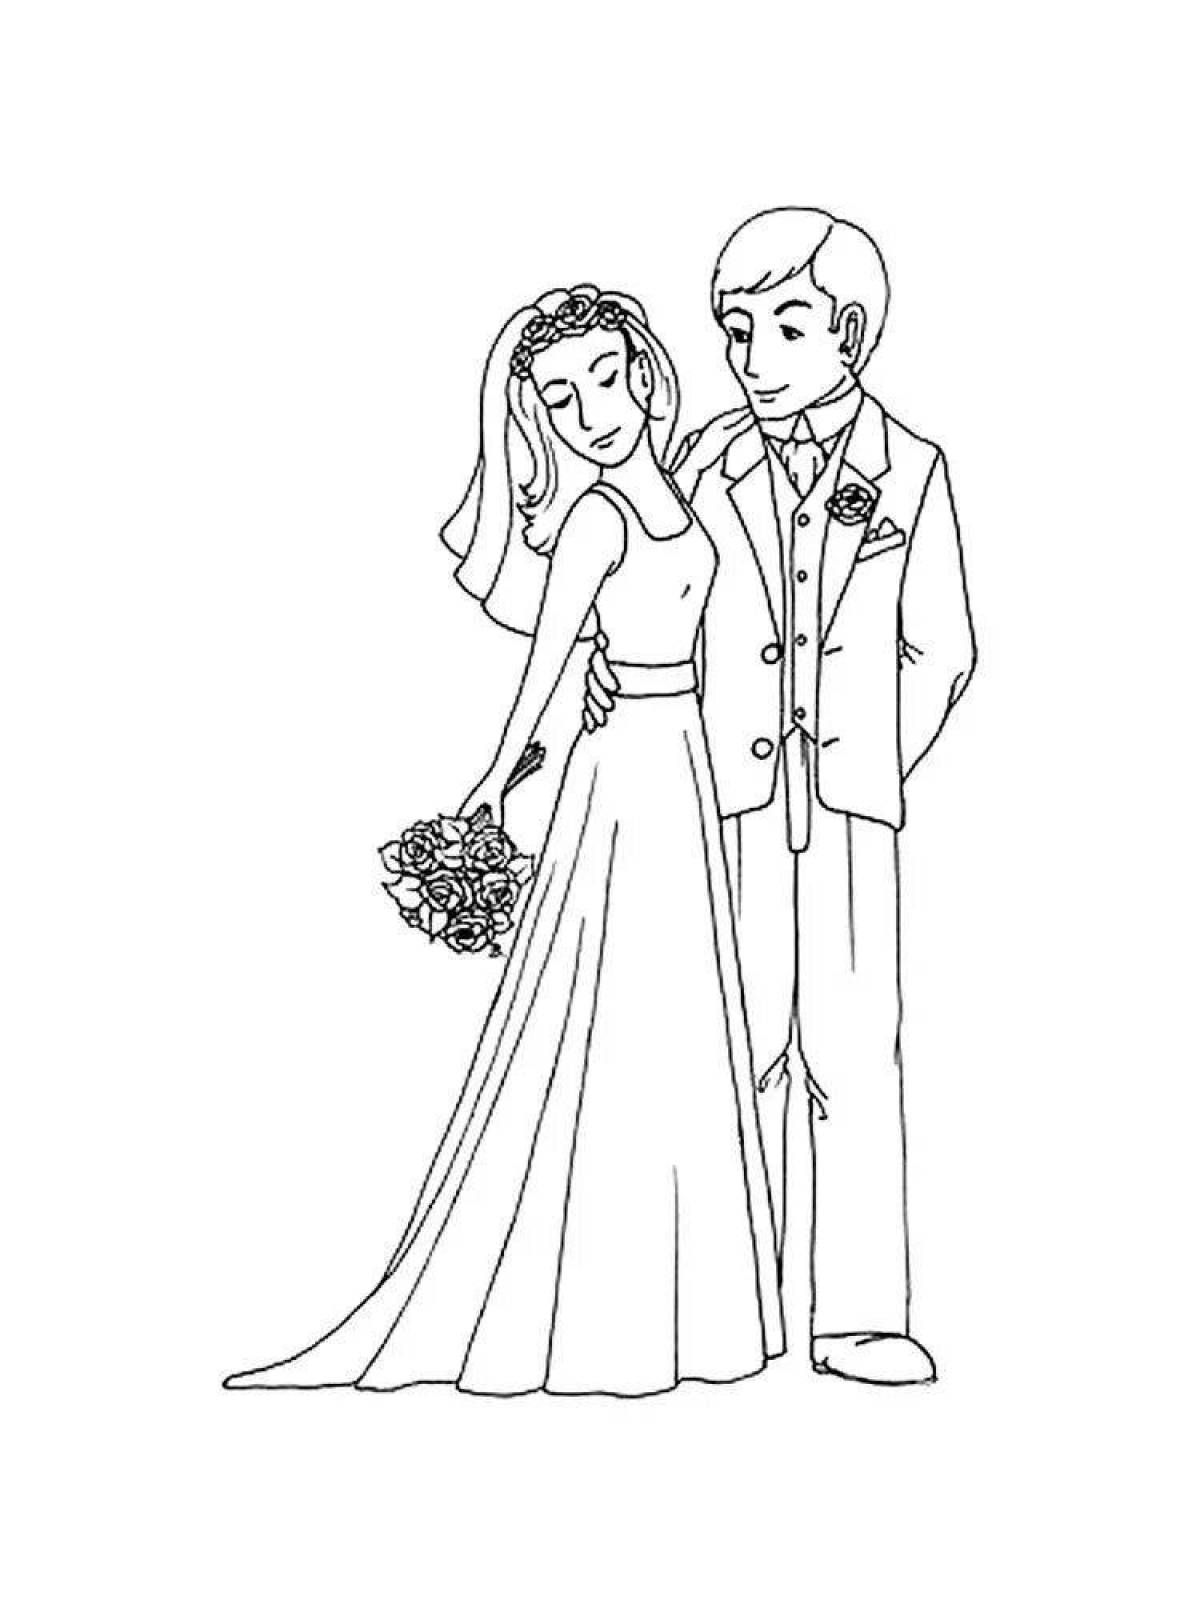 Blushing bride coloring page